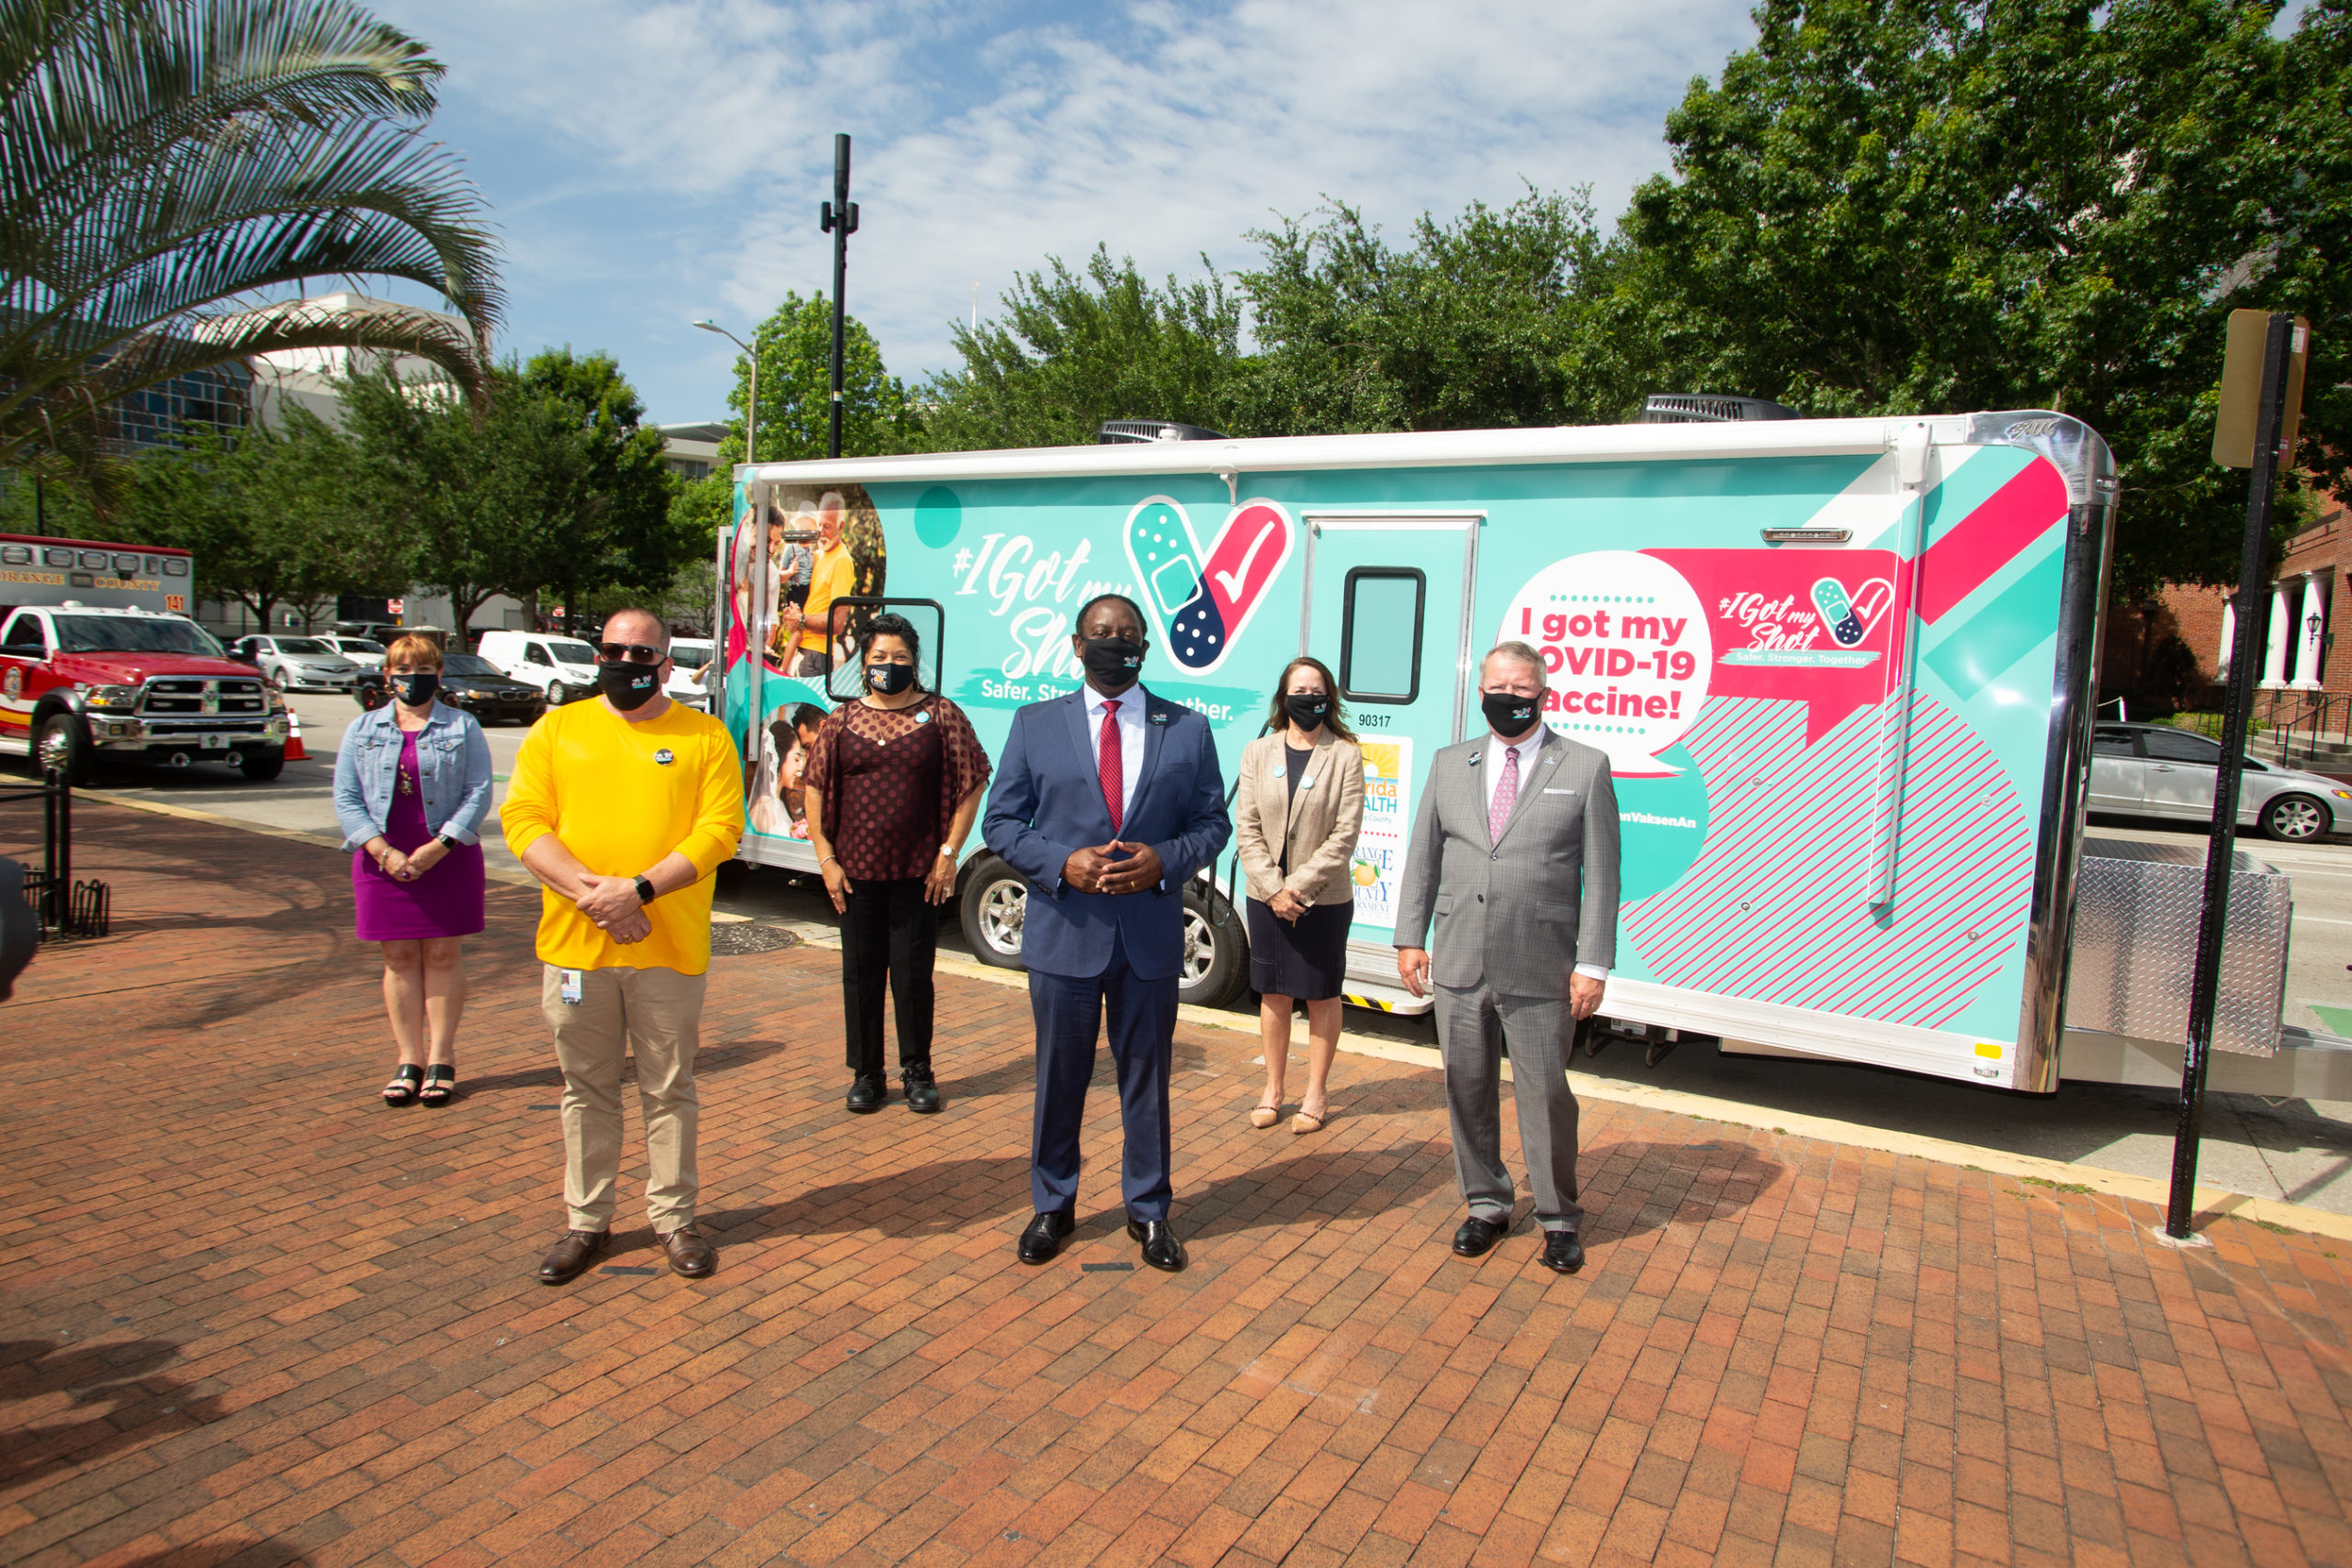 Los Comisionados del Condado de Orange, el Alcalde Dyer de Orlando y el Alcalde Demings del Condado de Orange en el lanzamiento de la Campaña para Disipar las Dudas en Relación con la Vacuna.